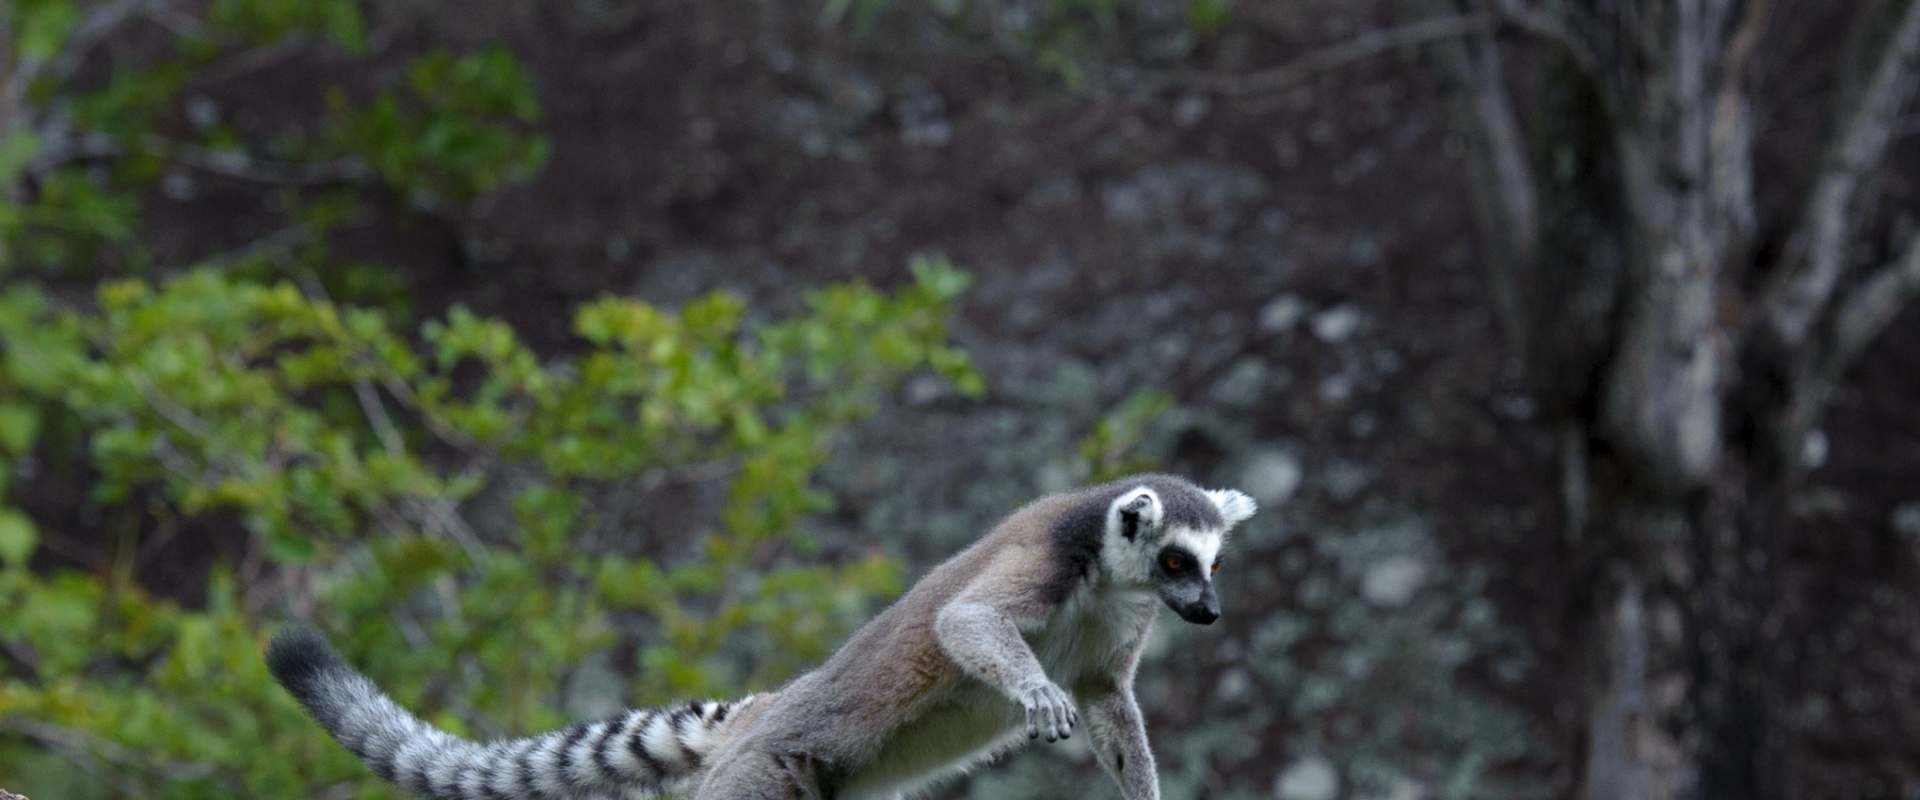 Island of Lemurs: Madagascar background 2